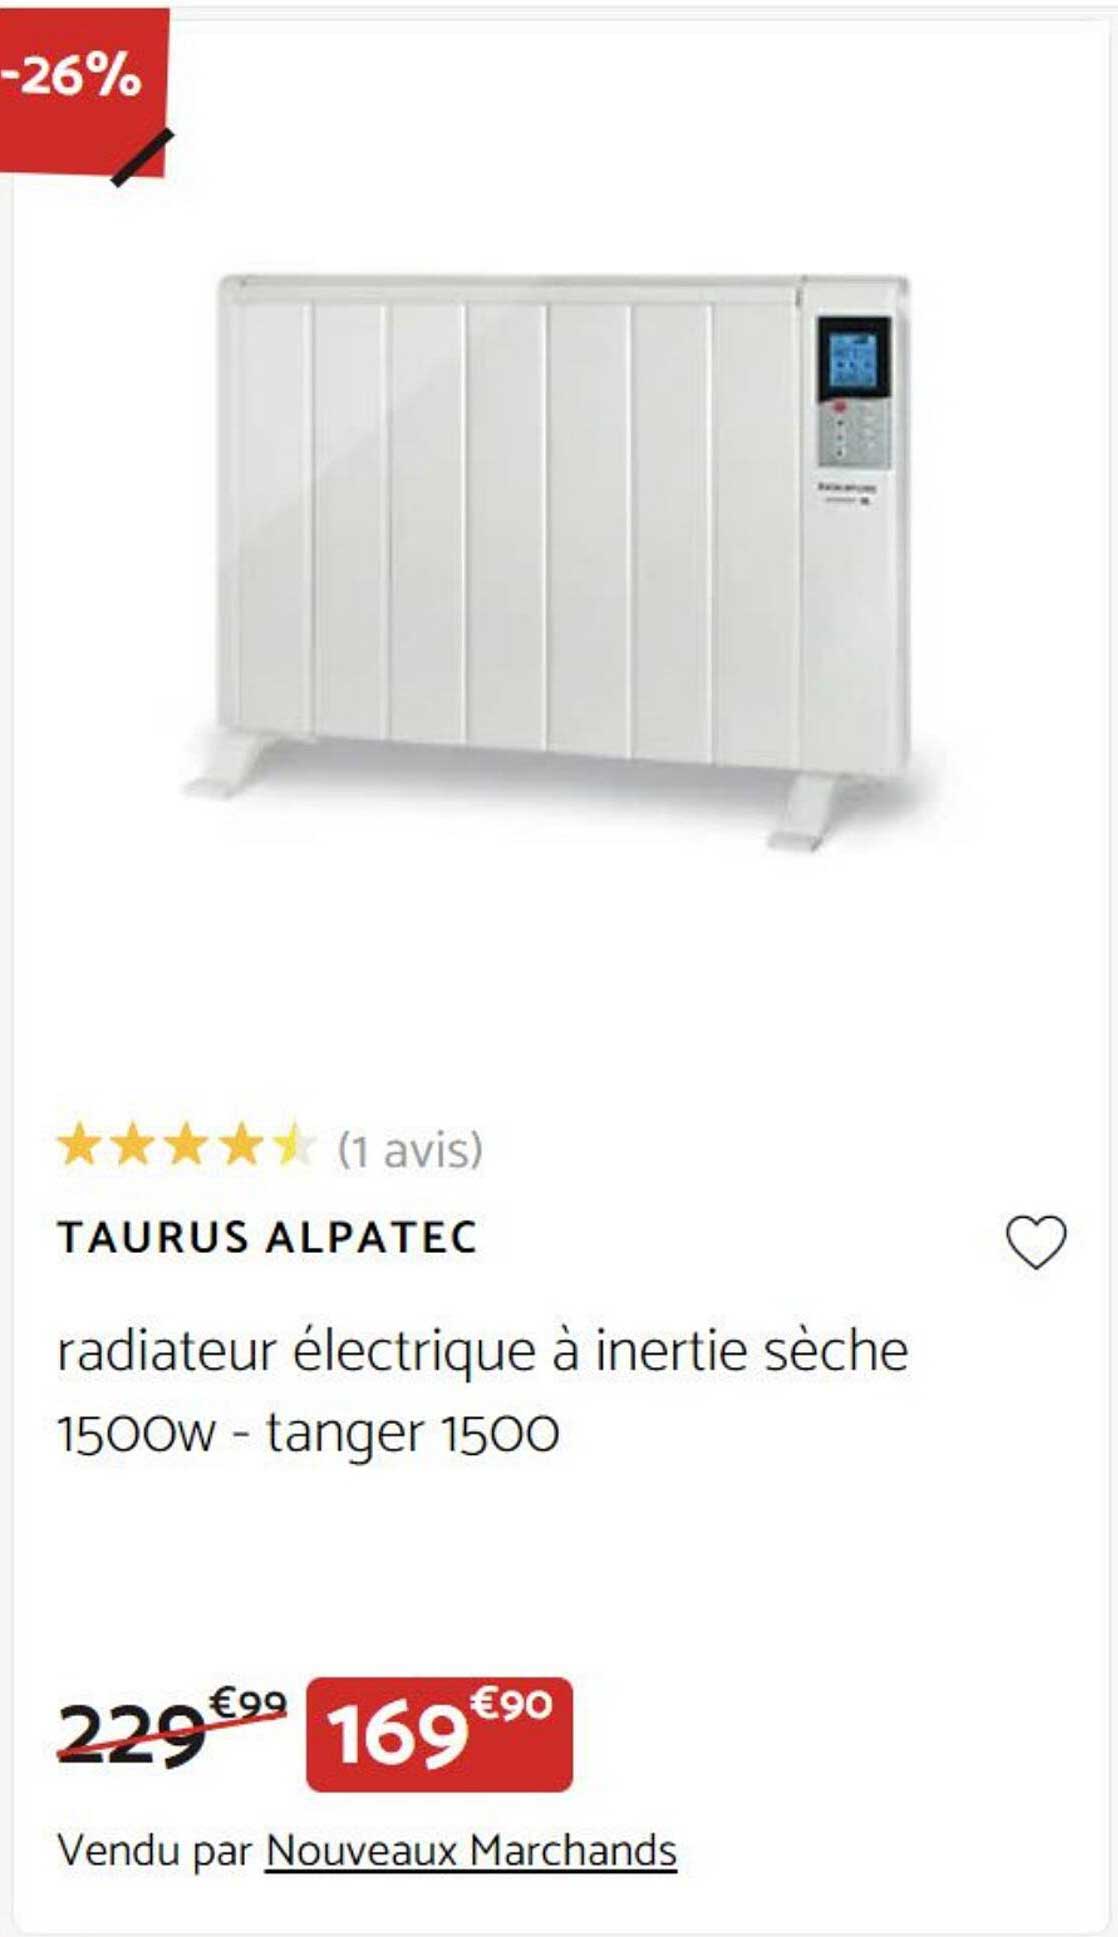 Radiateur Électrique À Inertie Sèche 1500w Taurus Alpatec Tanger